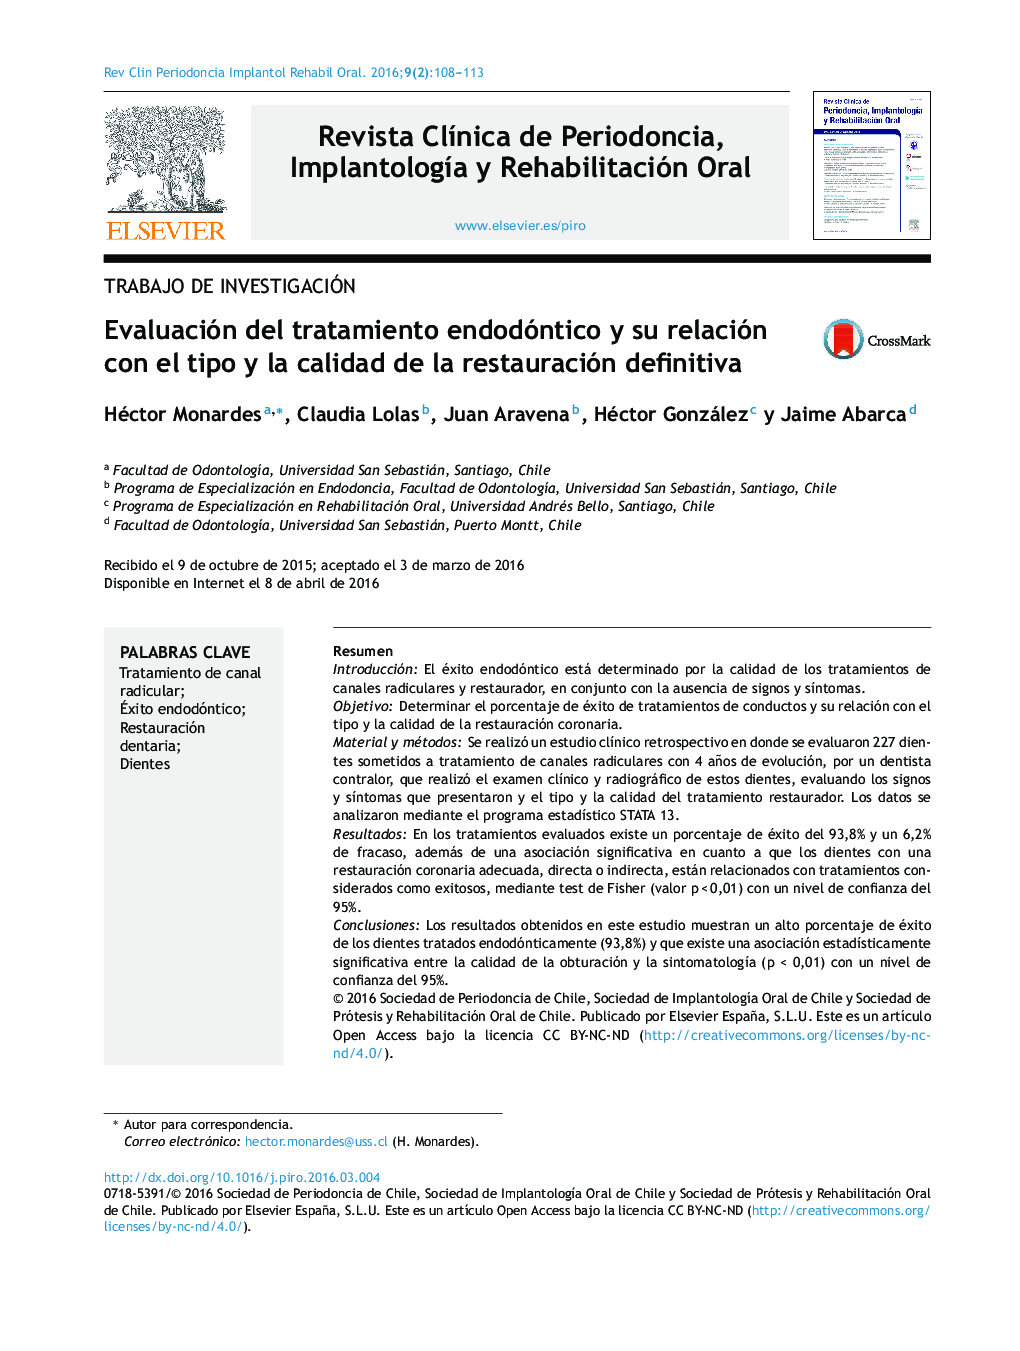 Evaluación del tratamiento endodóntico y su relación con el tipo y la calidad de la restauración definitiva